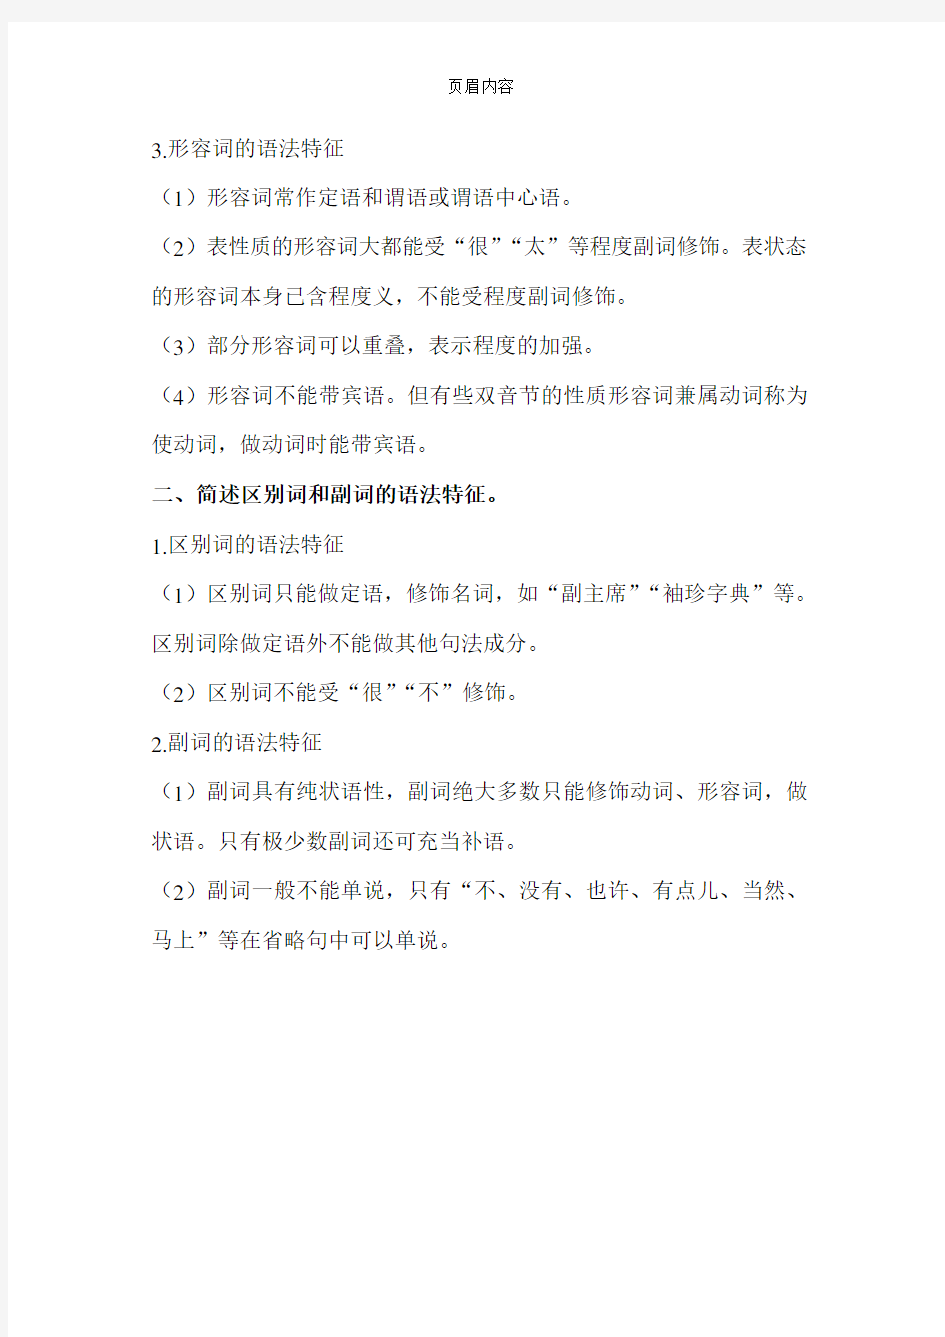 现代汉语下册的部分课后习题